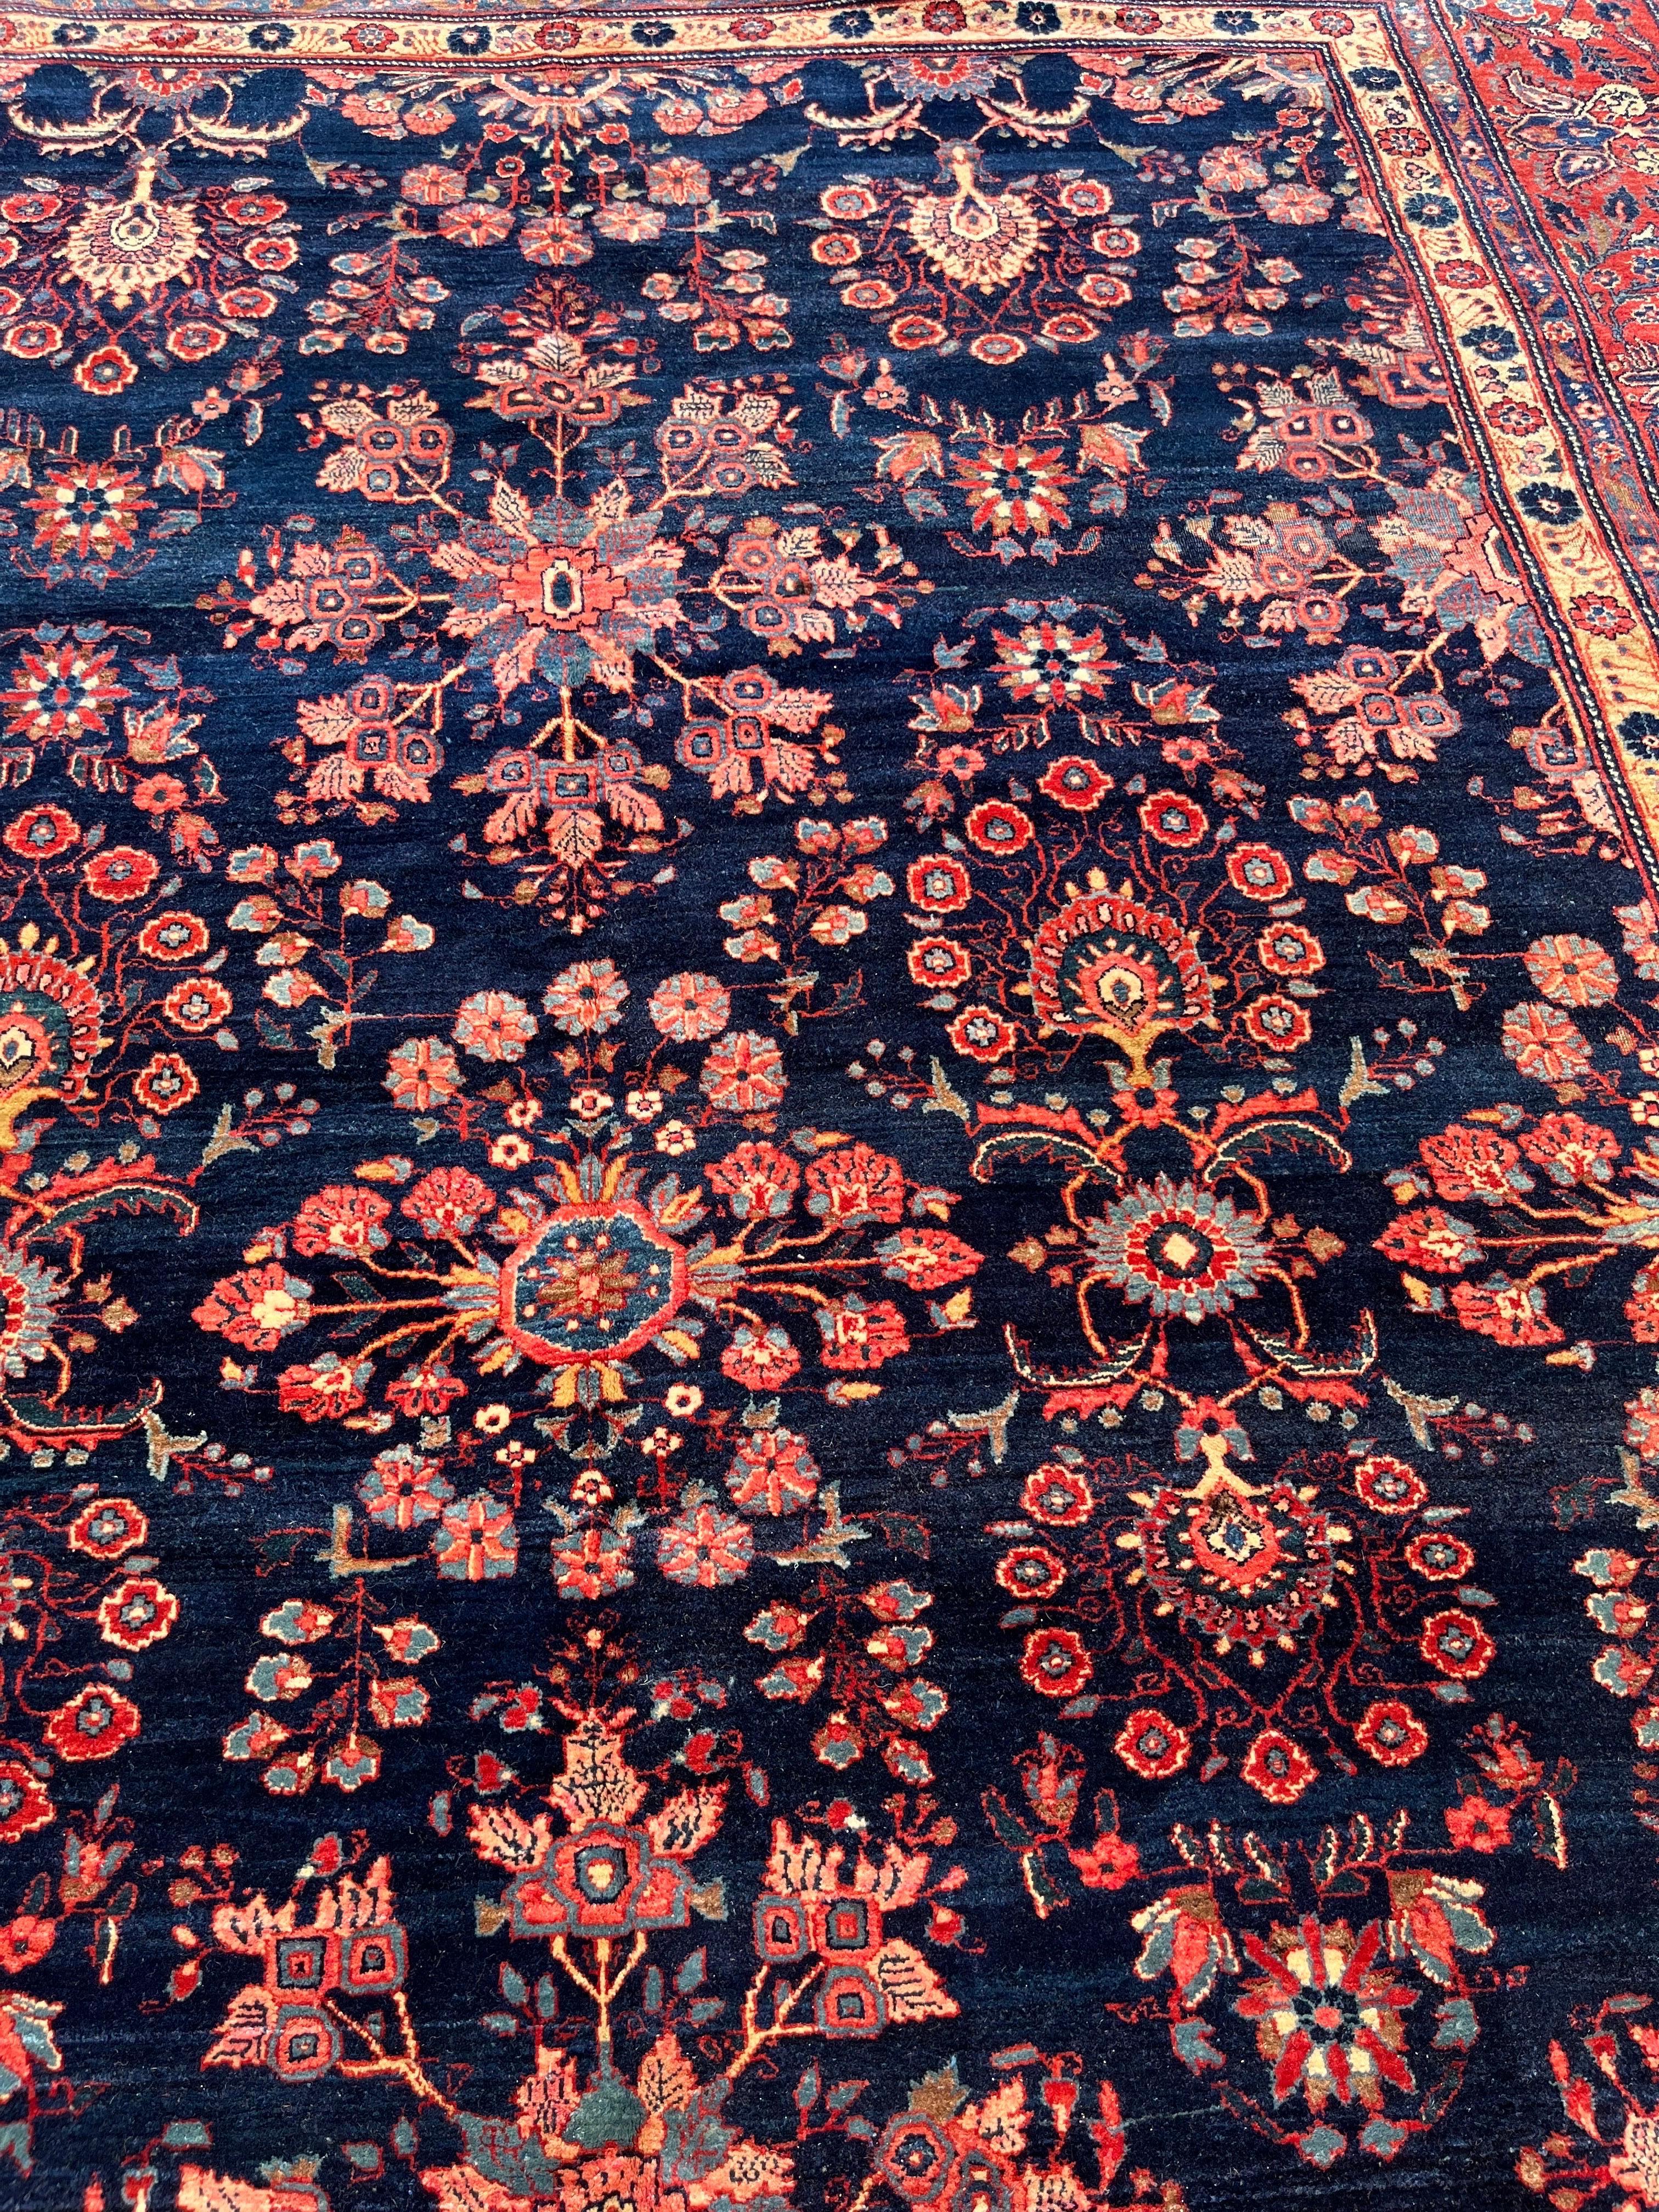 Sarouk Farahan 9’1”x12’1” Persian blue Mahajaran Sarouk ca 1910 handmade wool rug For Sale